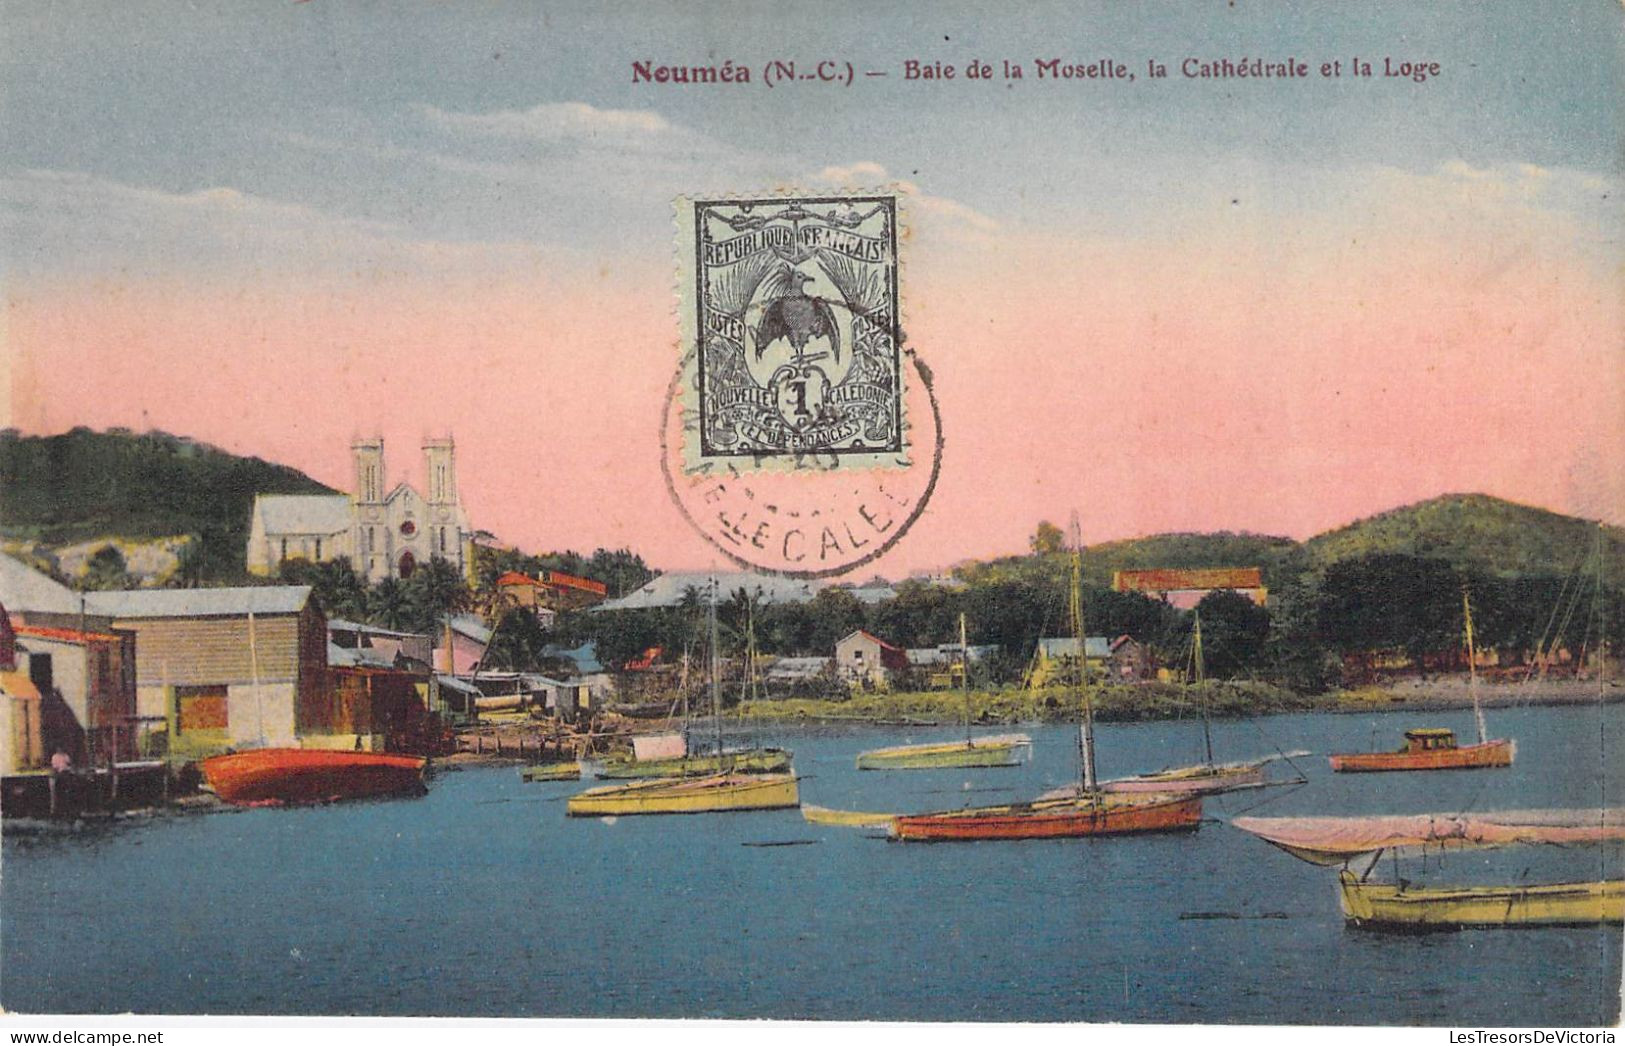 Nouvelle Calédonie - Nouméa - Baie De La Moselle Le Cathédrale Et La Loge - Bateau - Colorisé - Carte Postale Ancienne - New Caledonia